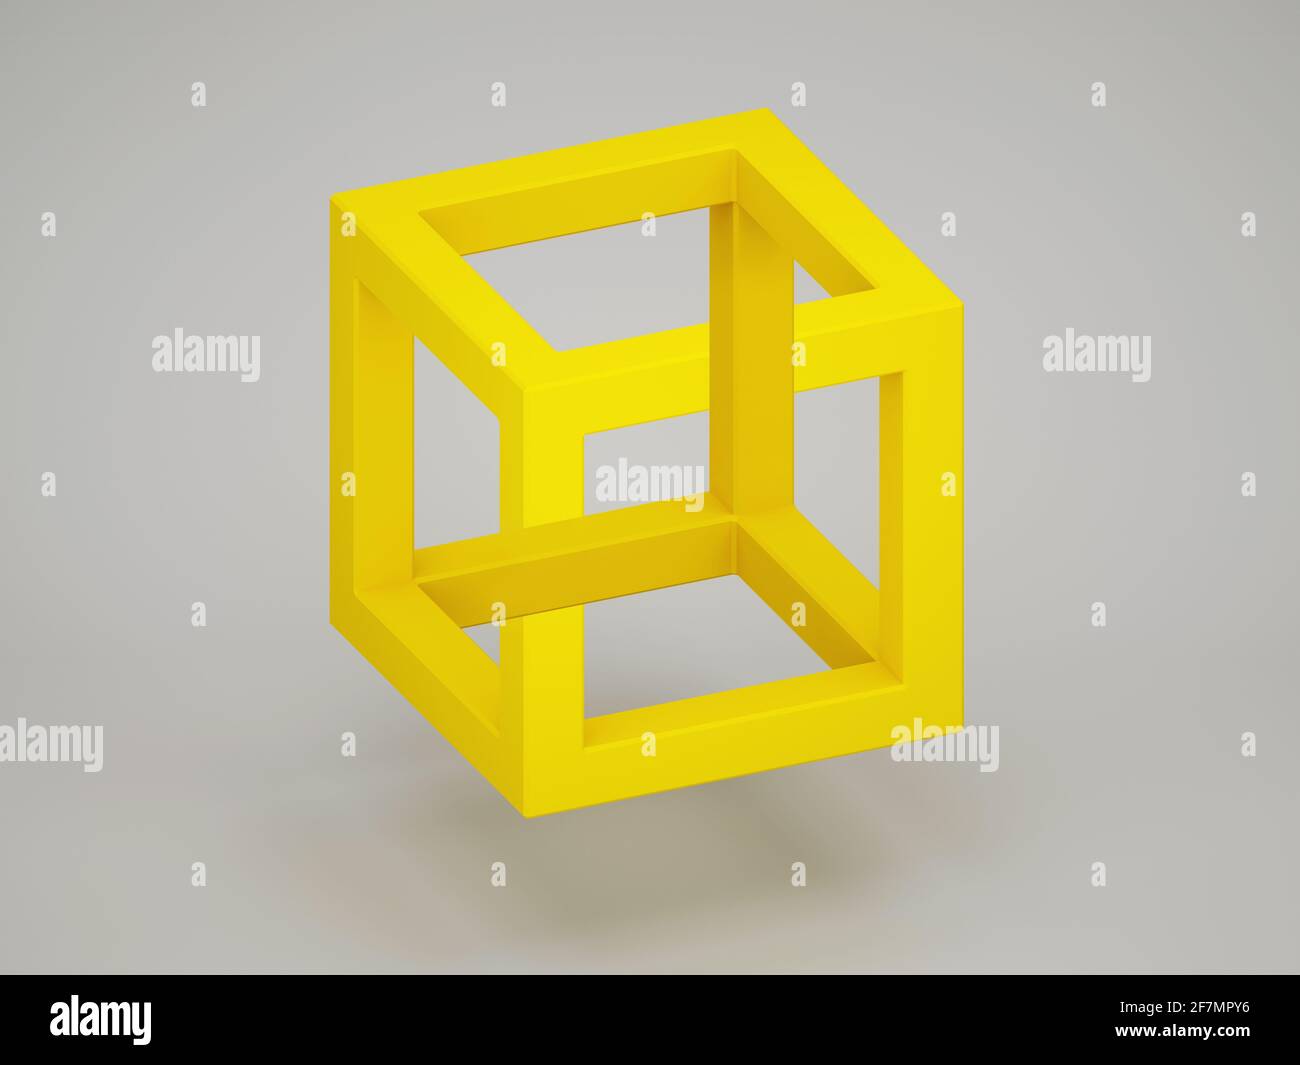 Beliebte optische Täuschung mit paradoxem gelben Würfel auf hellgrauem Hintergrund. 3D-Rendering-Illustration Stockfoto